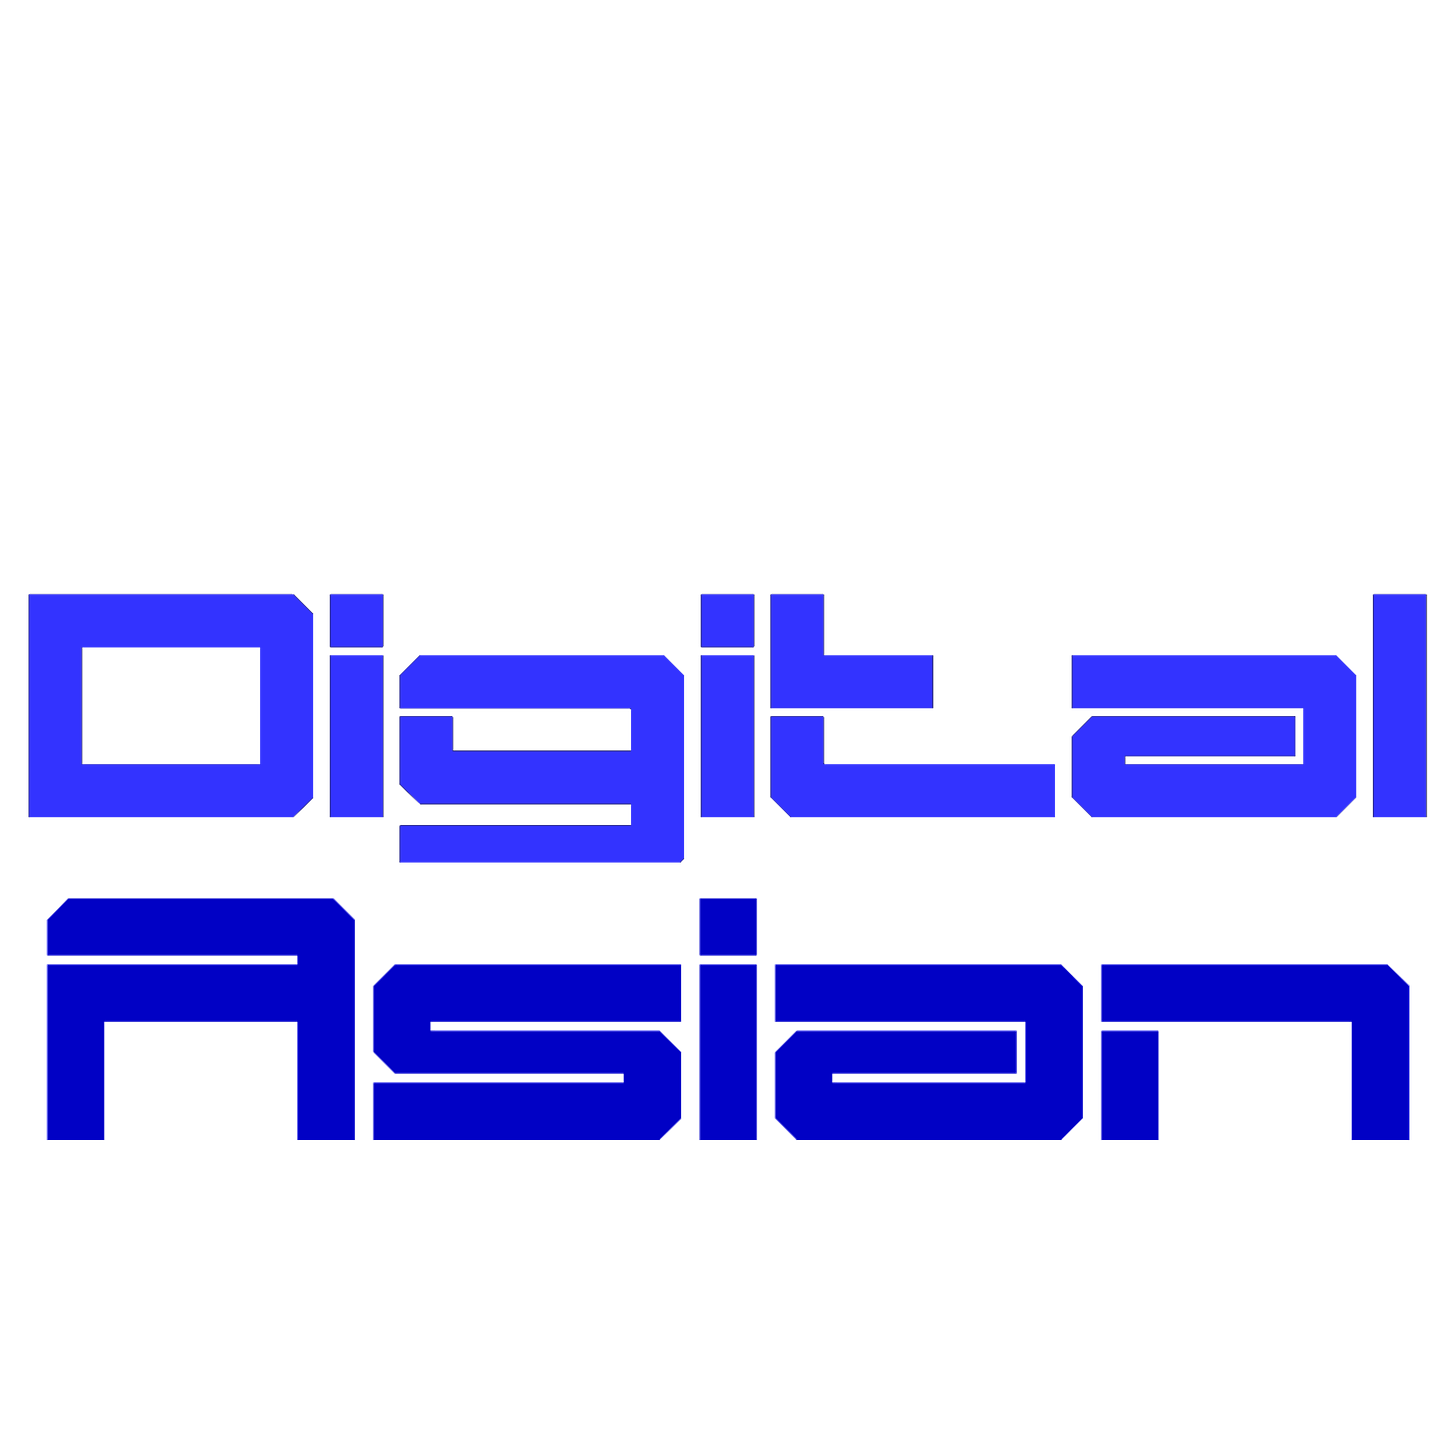 DigitalAsian